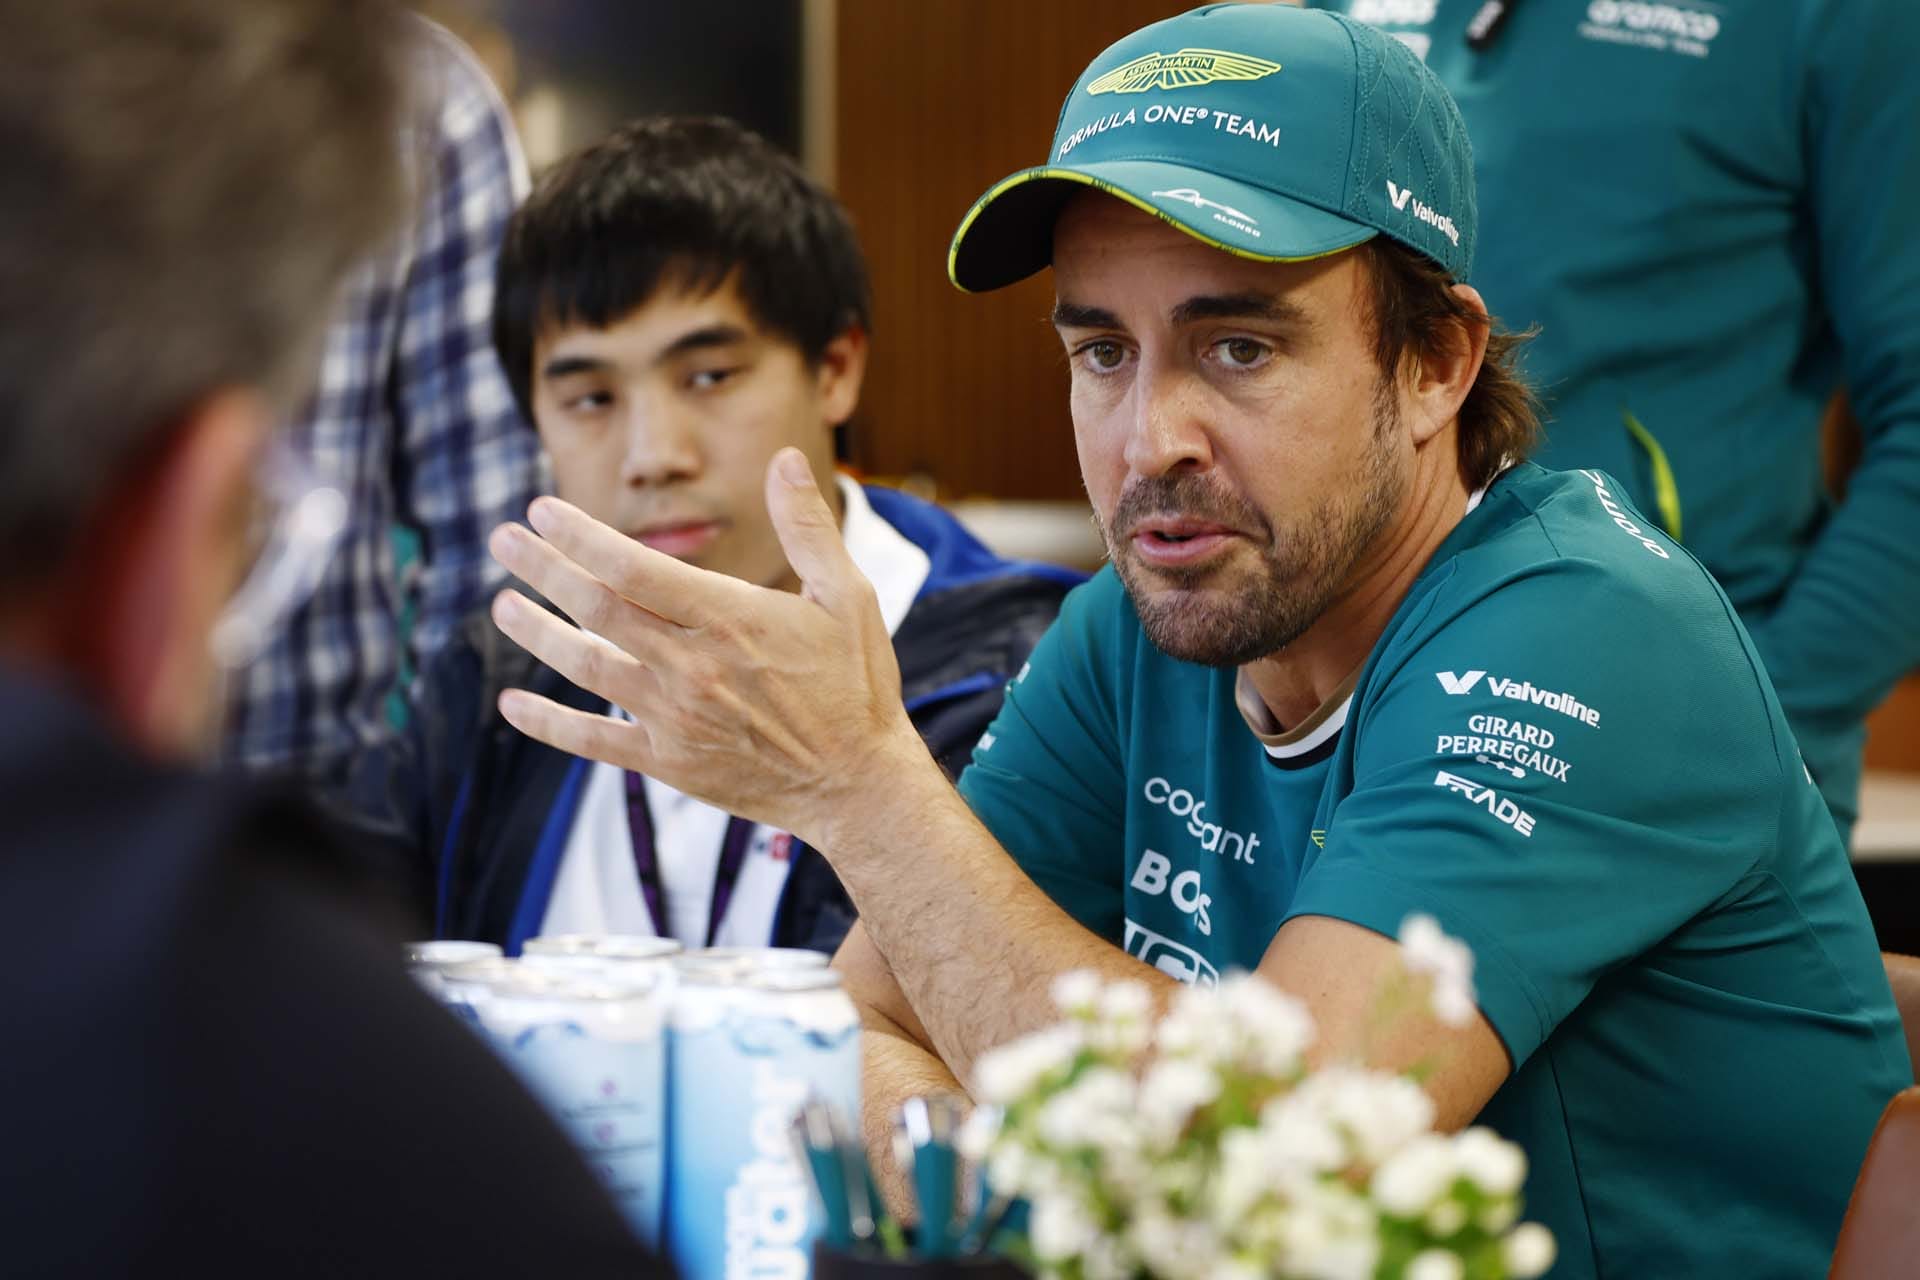 Azon az évben Alonso újraírta a sorsát: a 2007-es F1-es szerződés megkötése